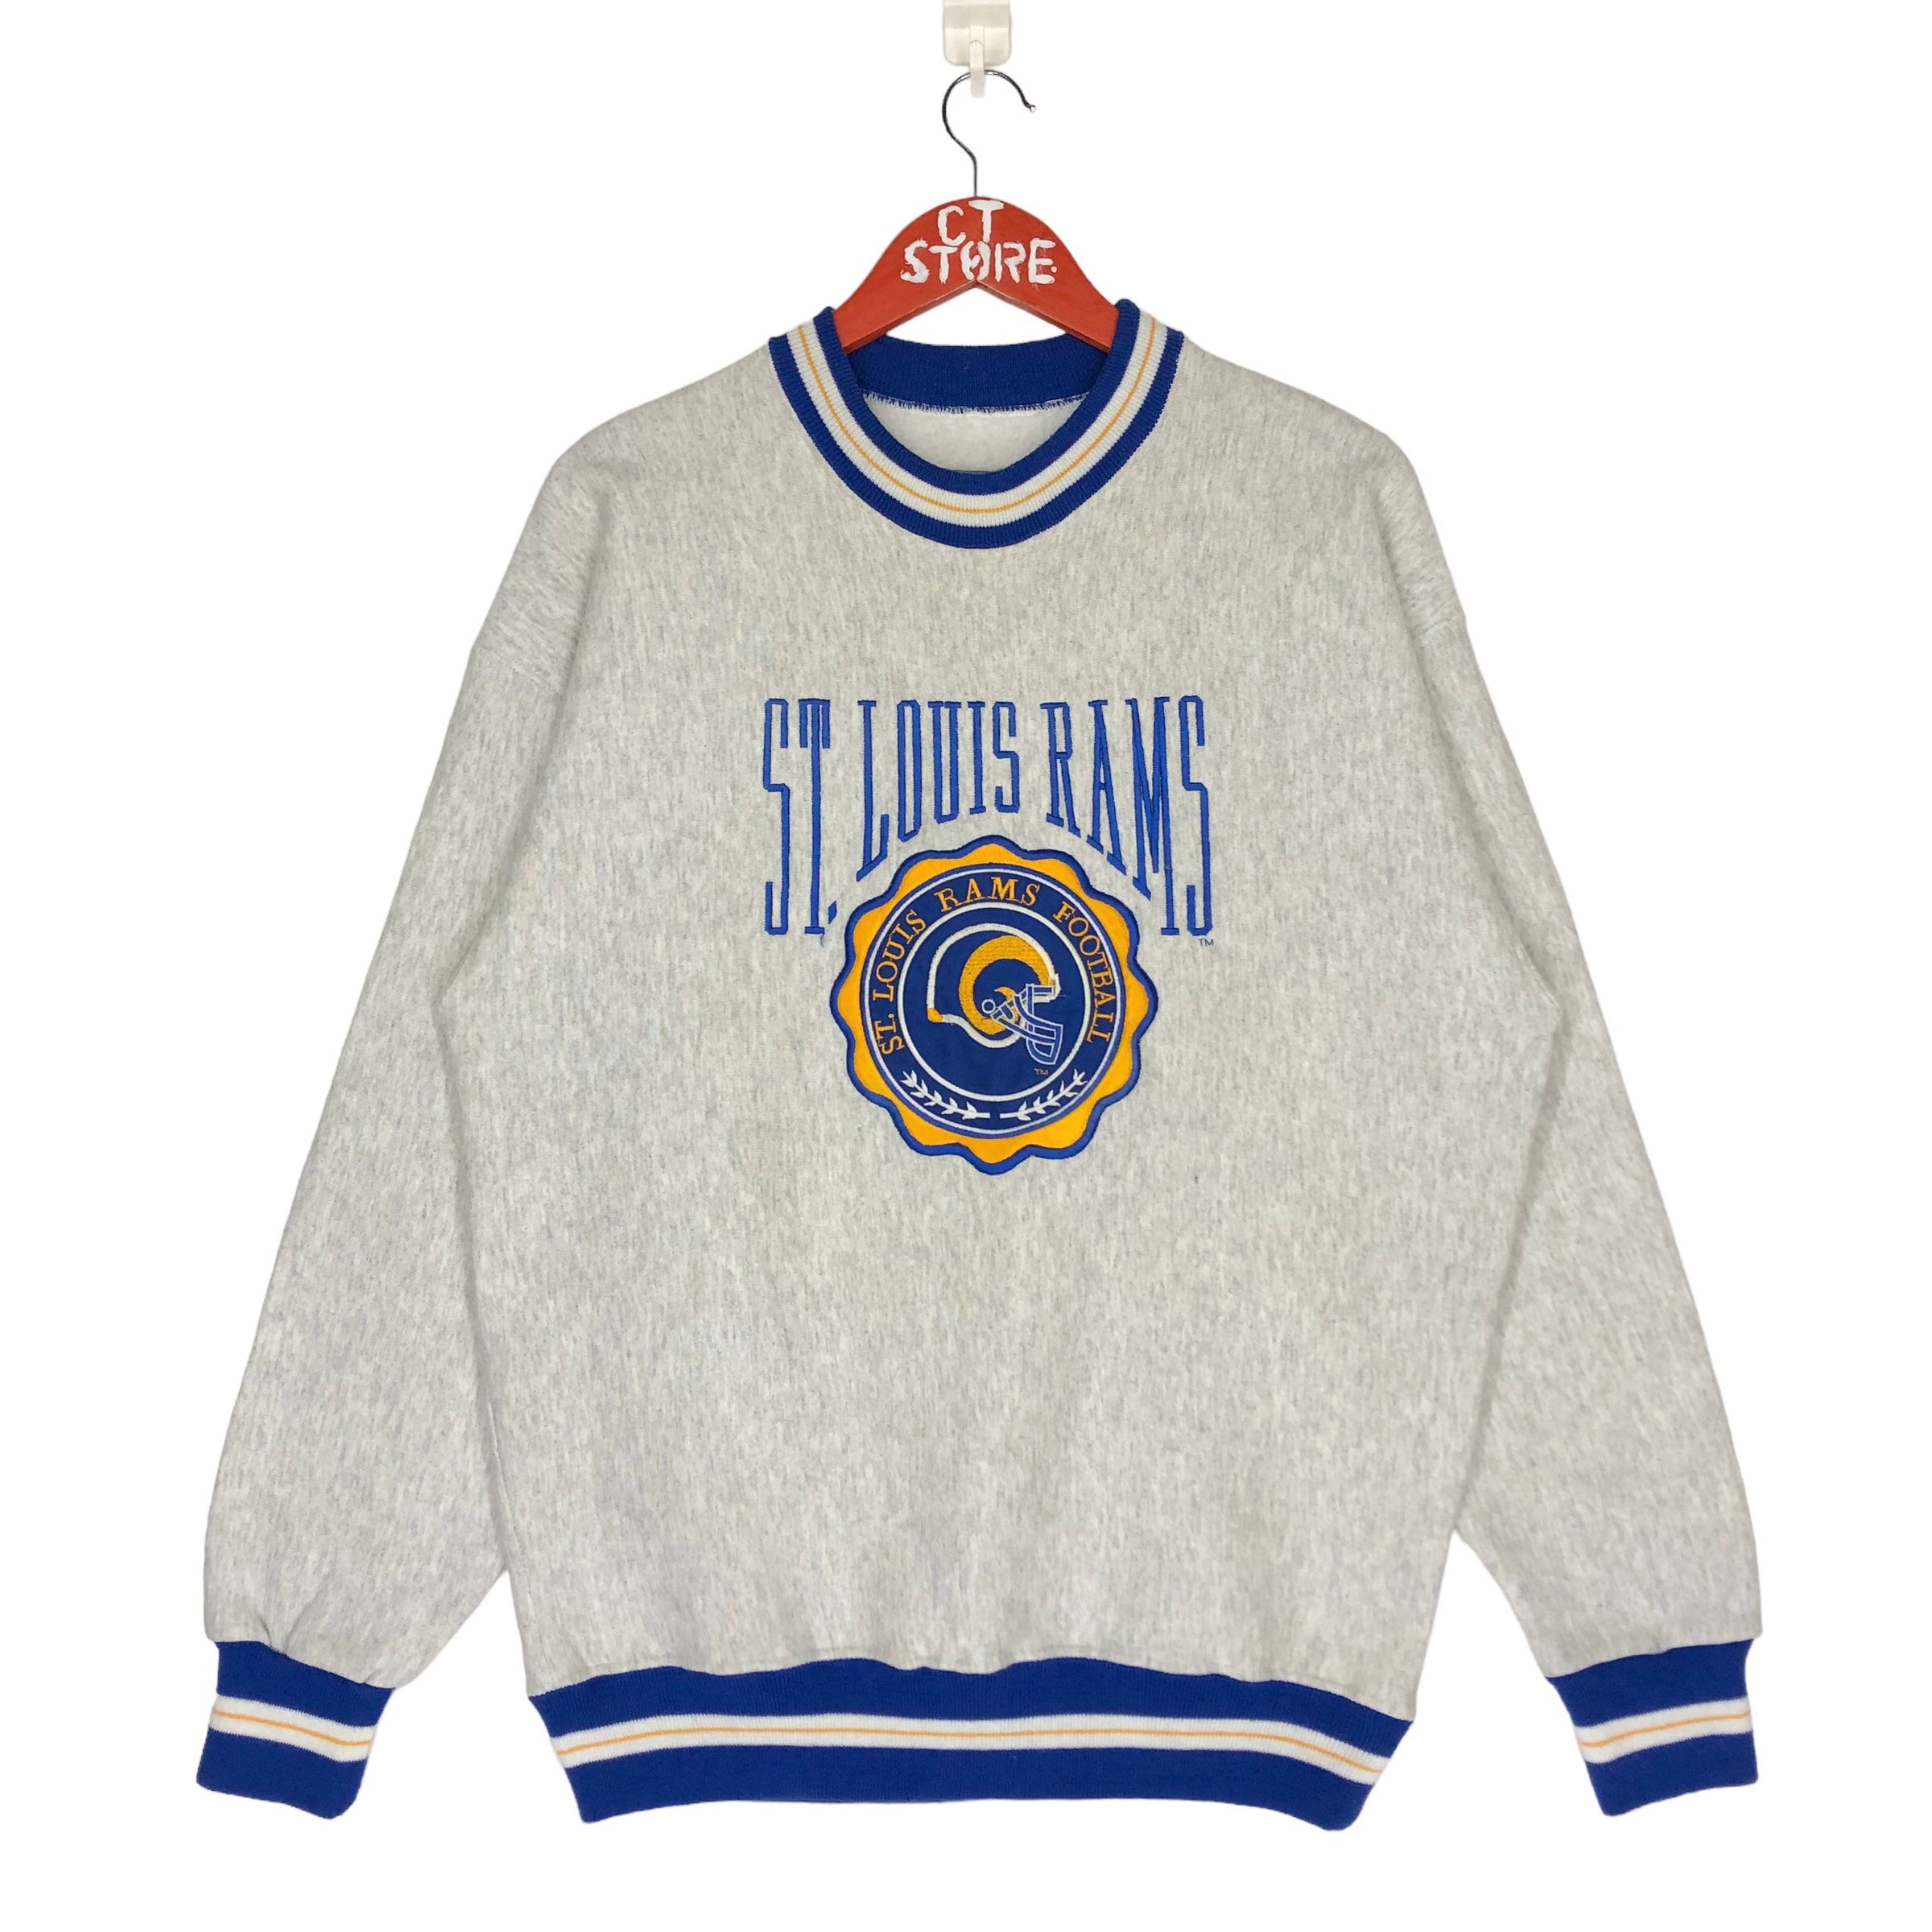 Vintage St. Louis Rams Sweatshirt –